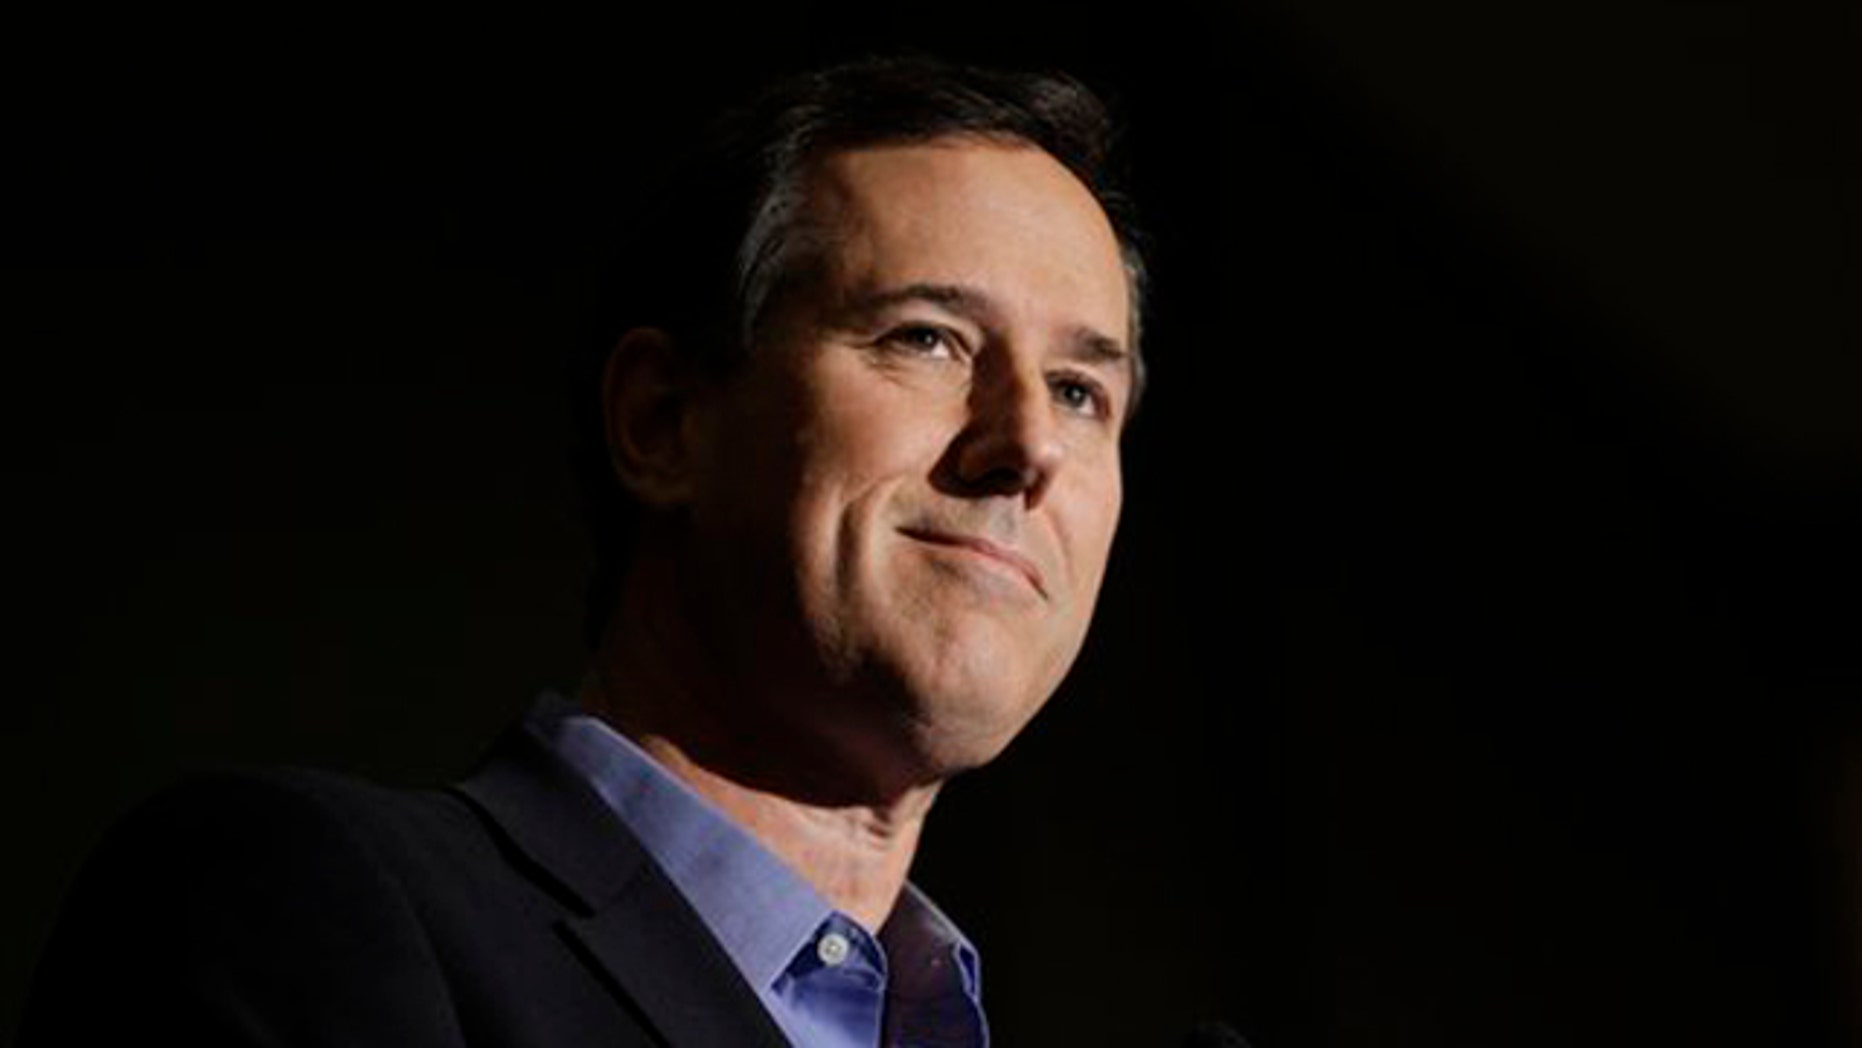 Santorum spars with Obama on faith, Romney on Olympics resume | Fox News